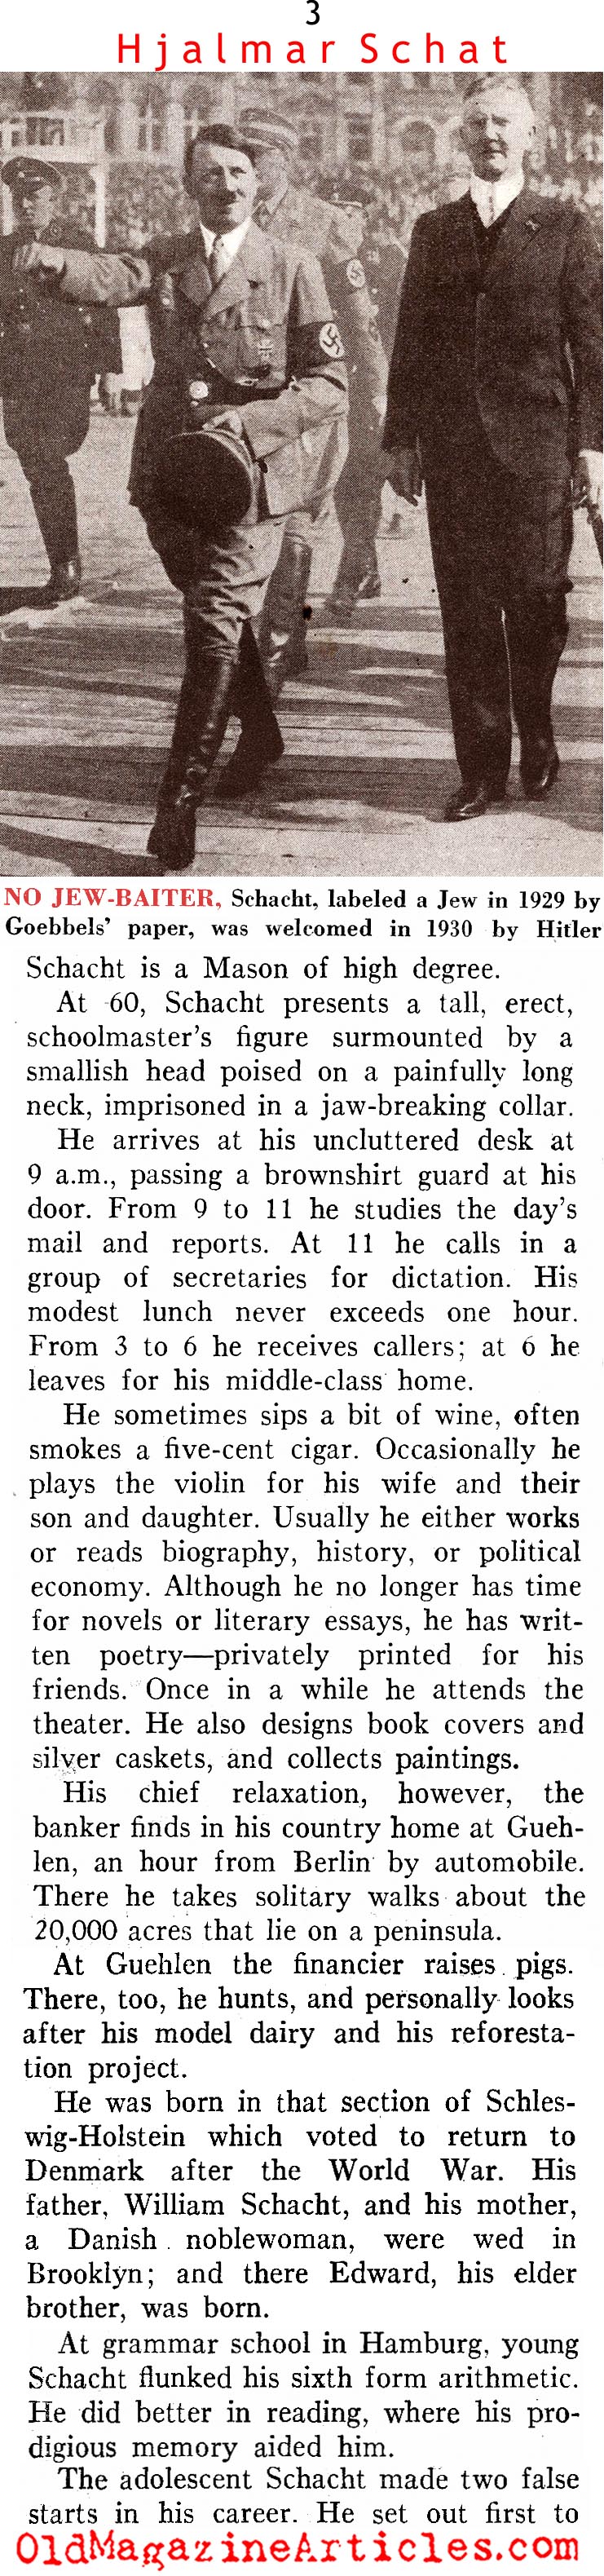 Hitler's Economist (Literary Digest, 1937)